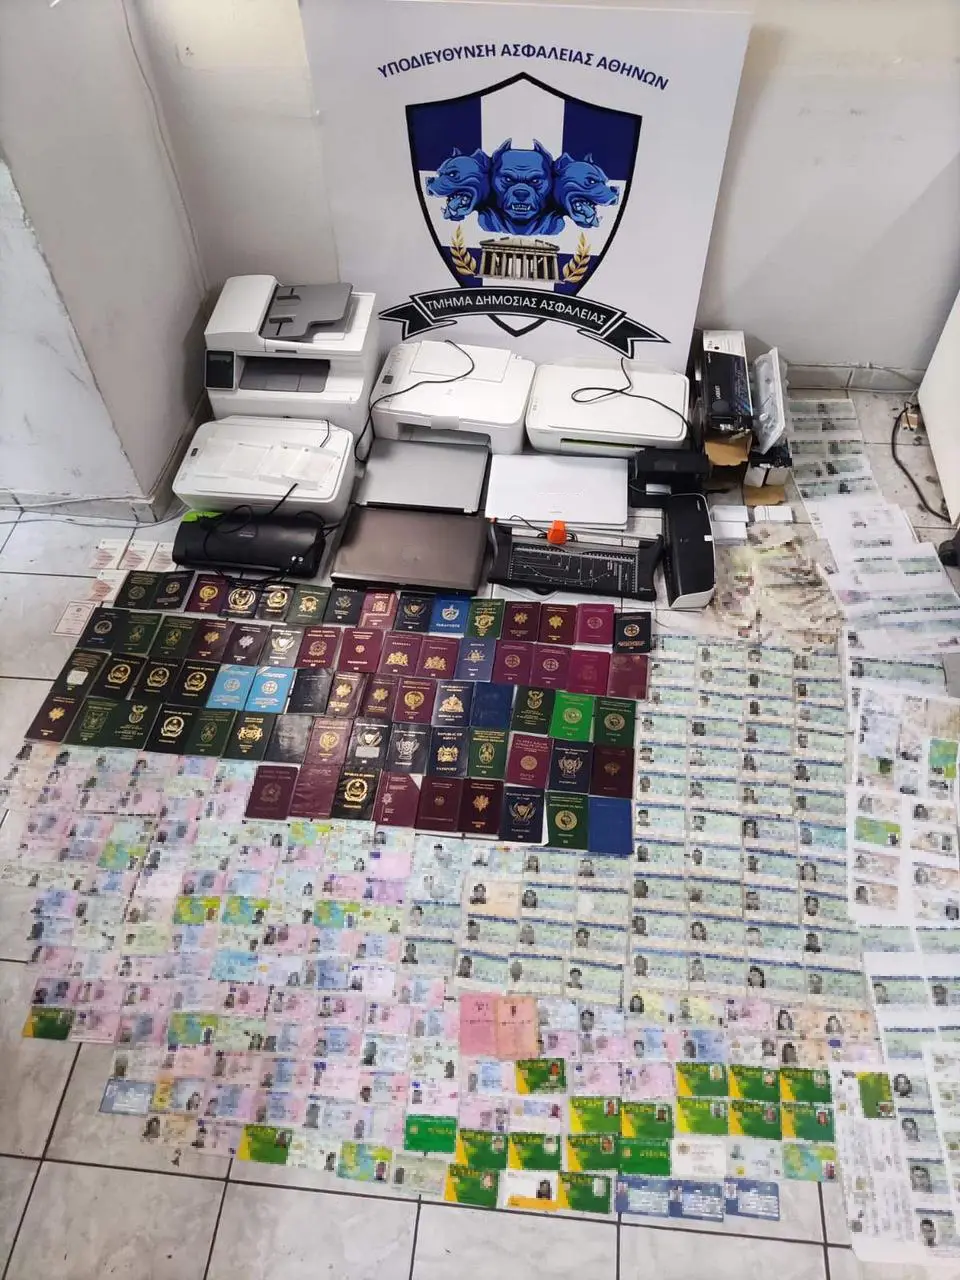 Κυψέλη: Εντοπίστηκε εργαστήριο πλαστών ταξιδιωτικών εγγράφων – Πουλούσαν ταυτότητες και διαβατήρια για τουλάχιστον 500 ευρώ